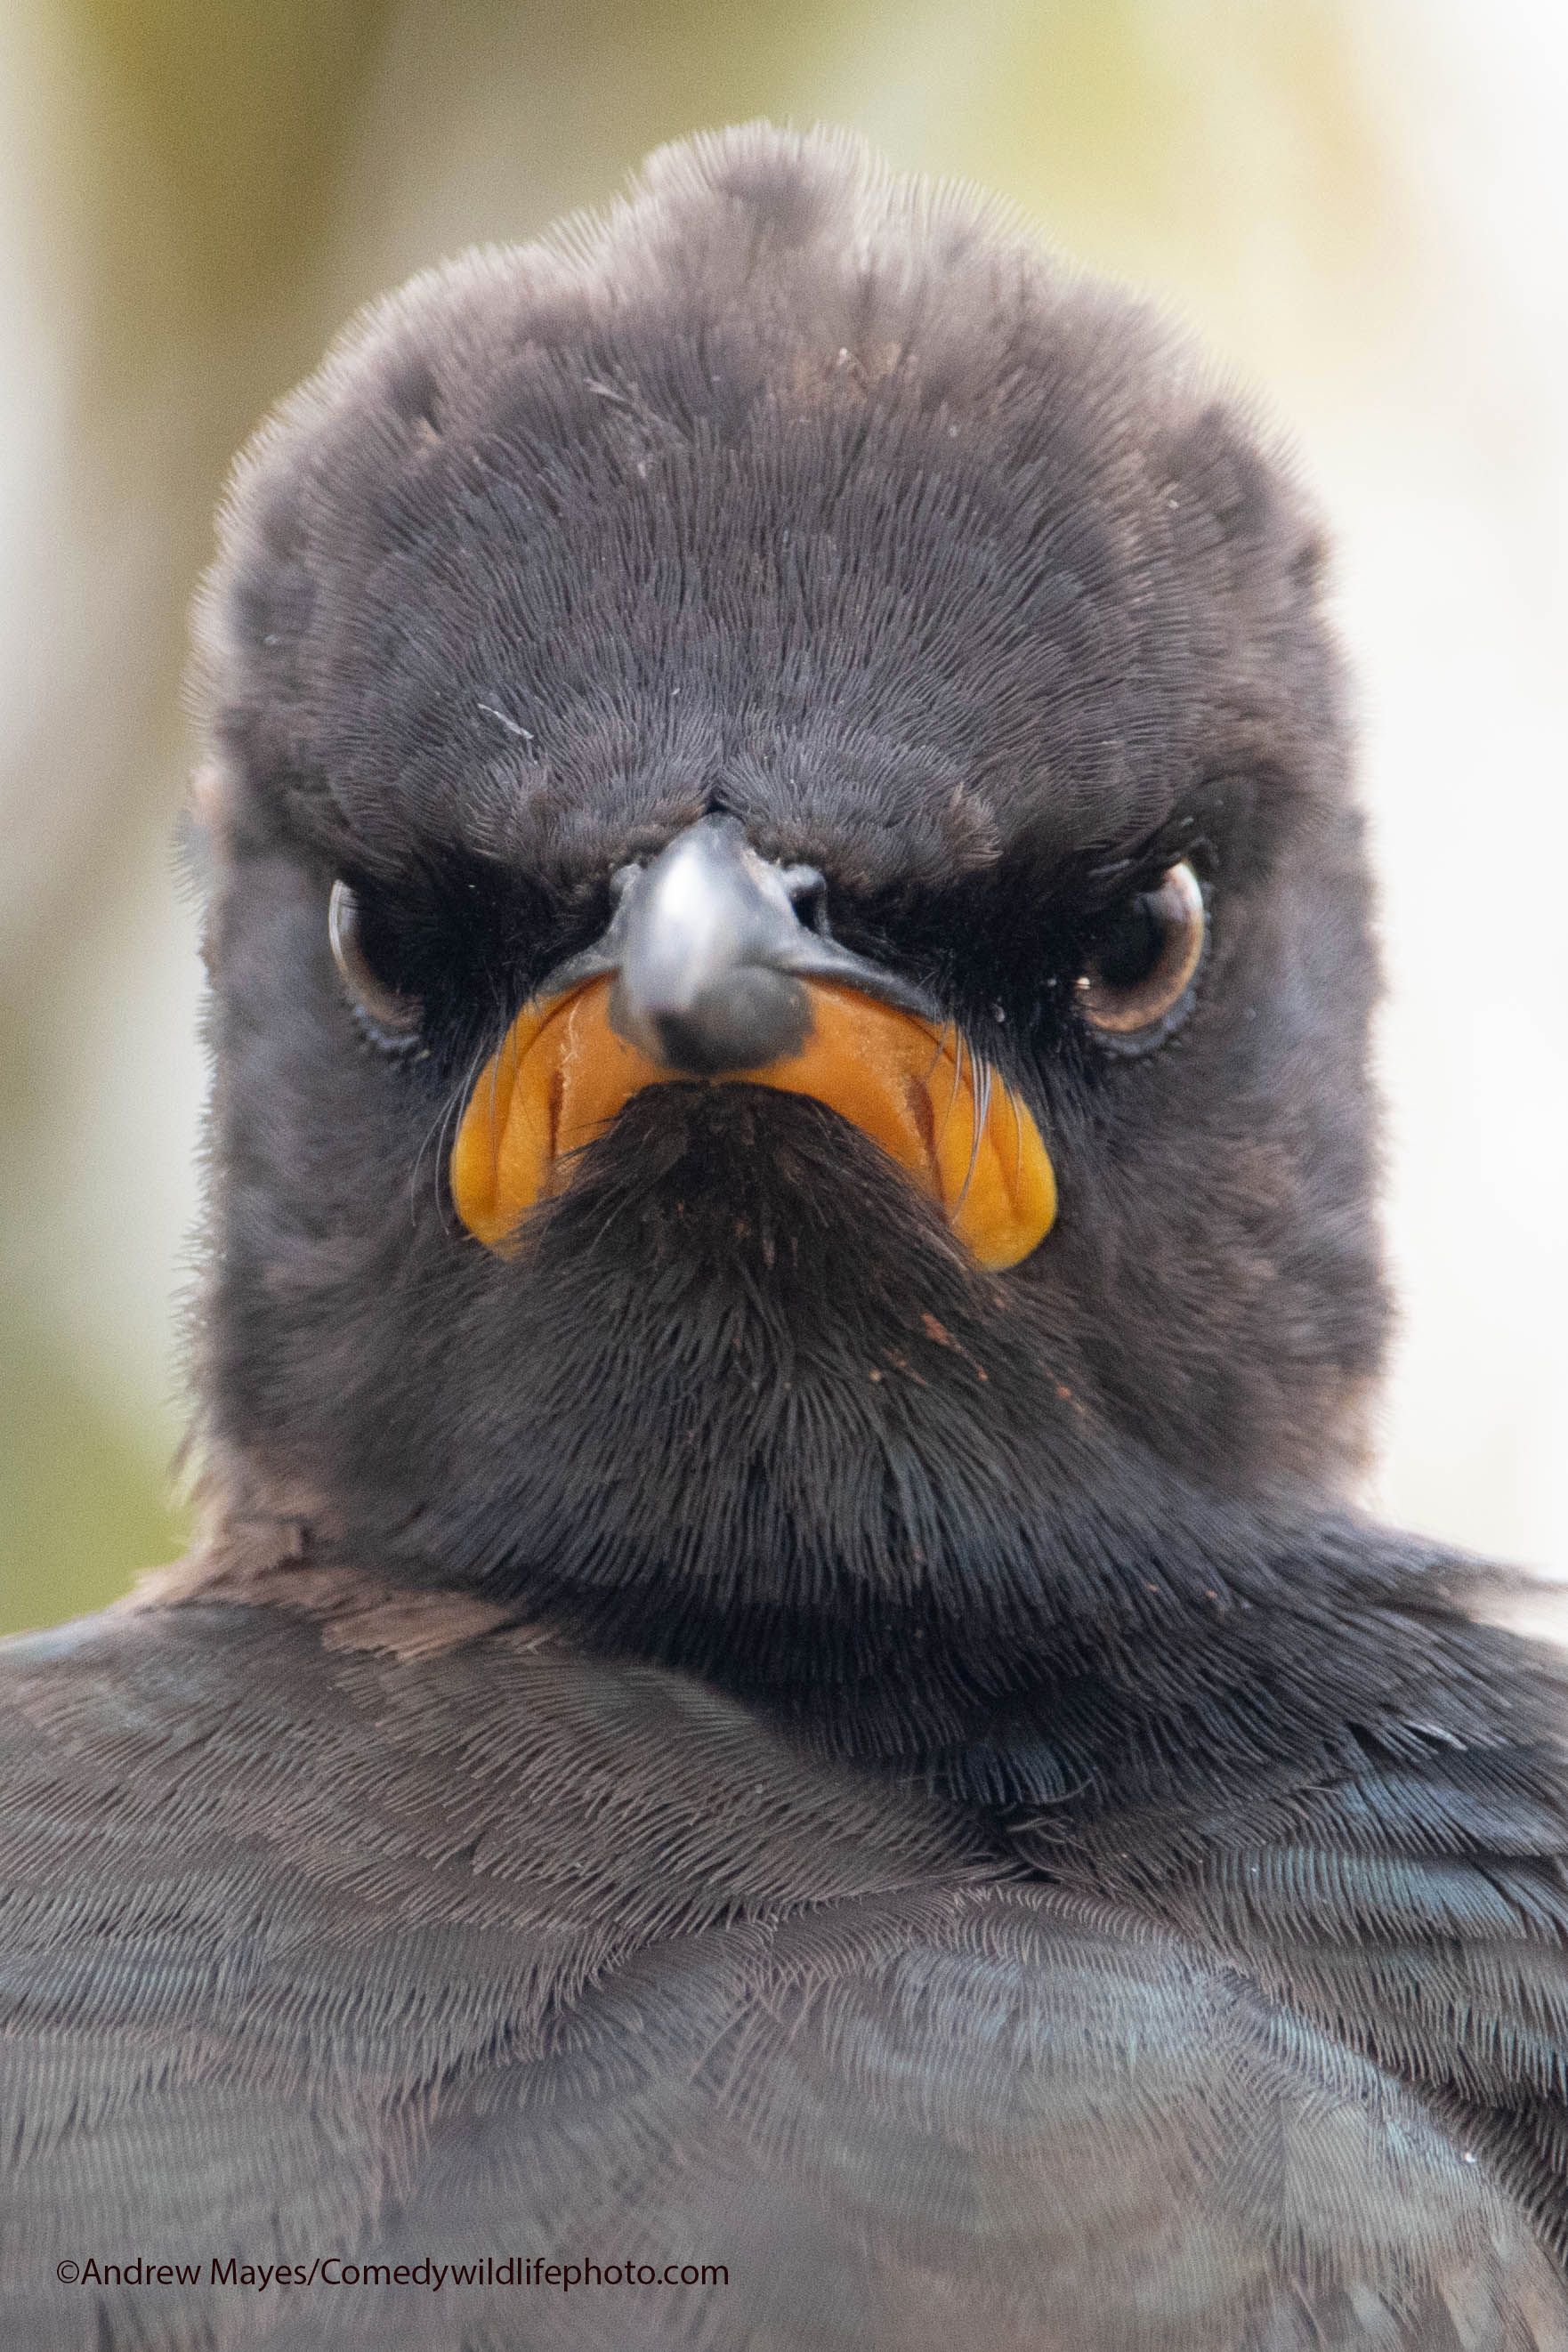 En fugl med brune fjær og oransje nebb, som minner om en nedoverpekende munn, stirrer direkte inn i kameraet.